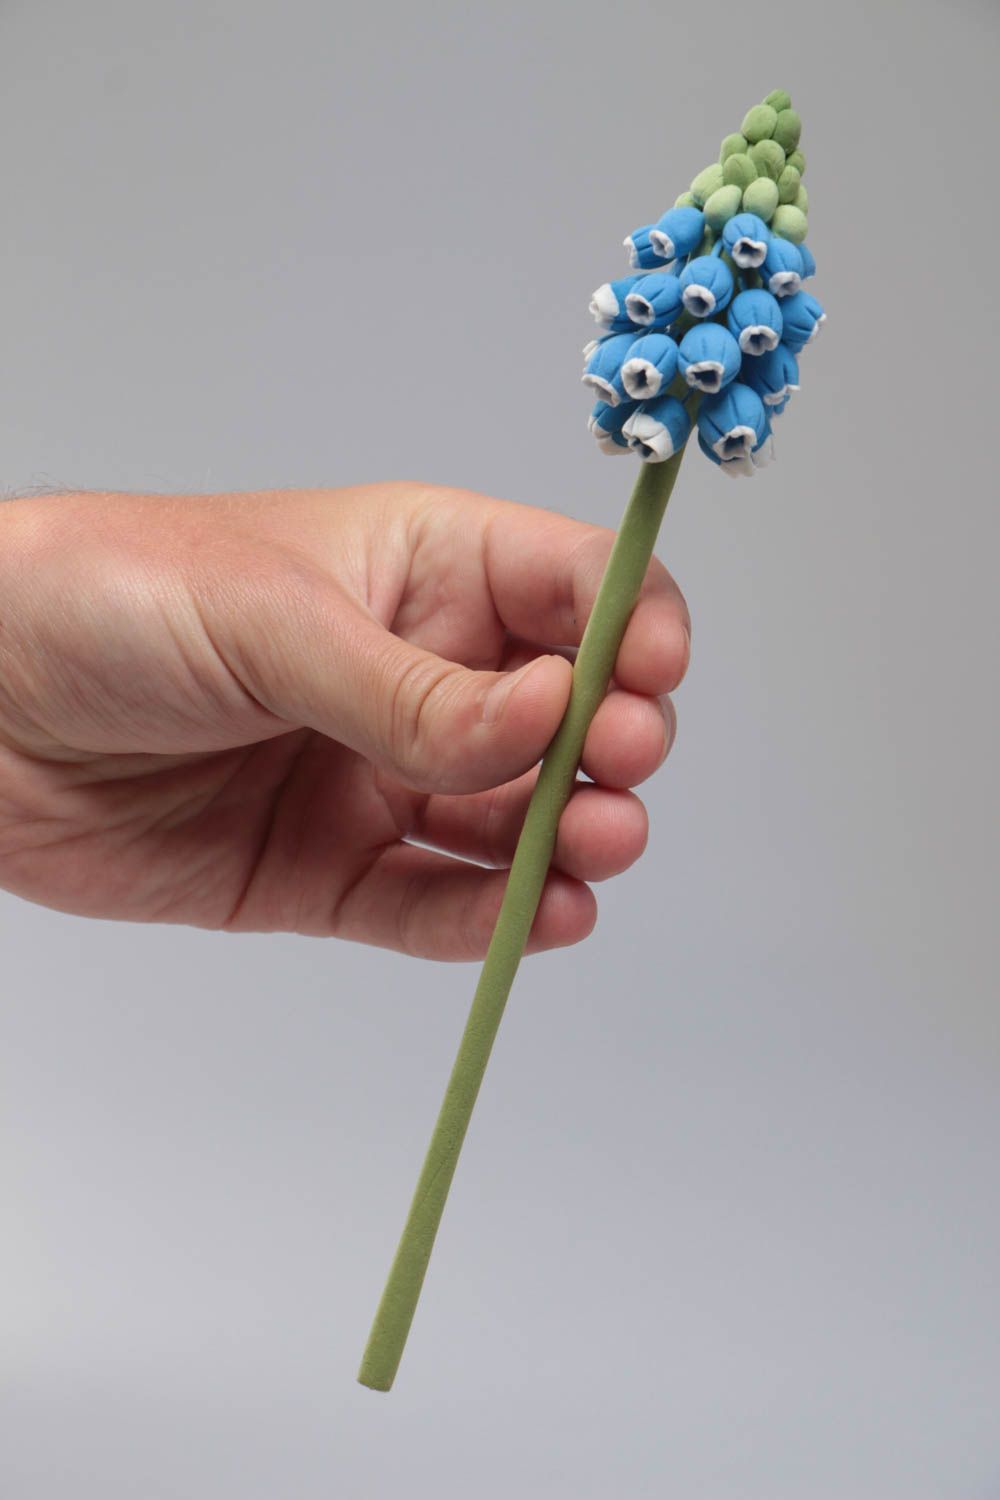 Цветок из японской полимерной глины мускари синий красивый небольшой хэнд мейд фото 5